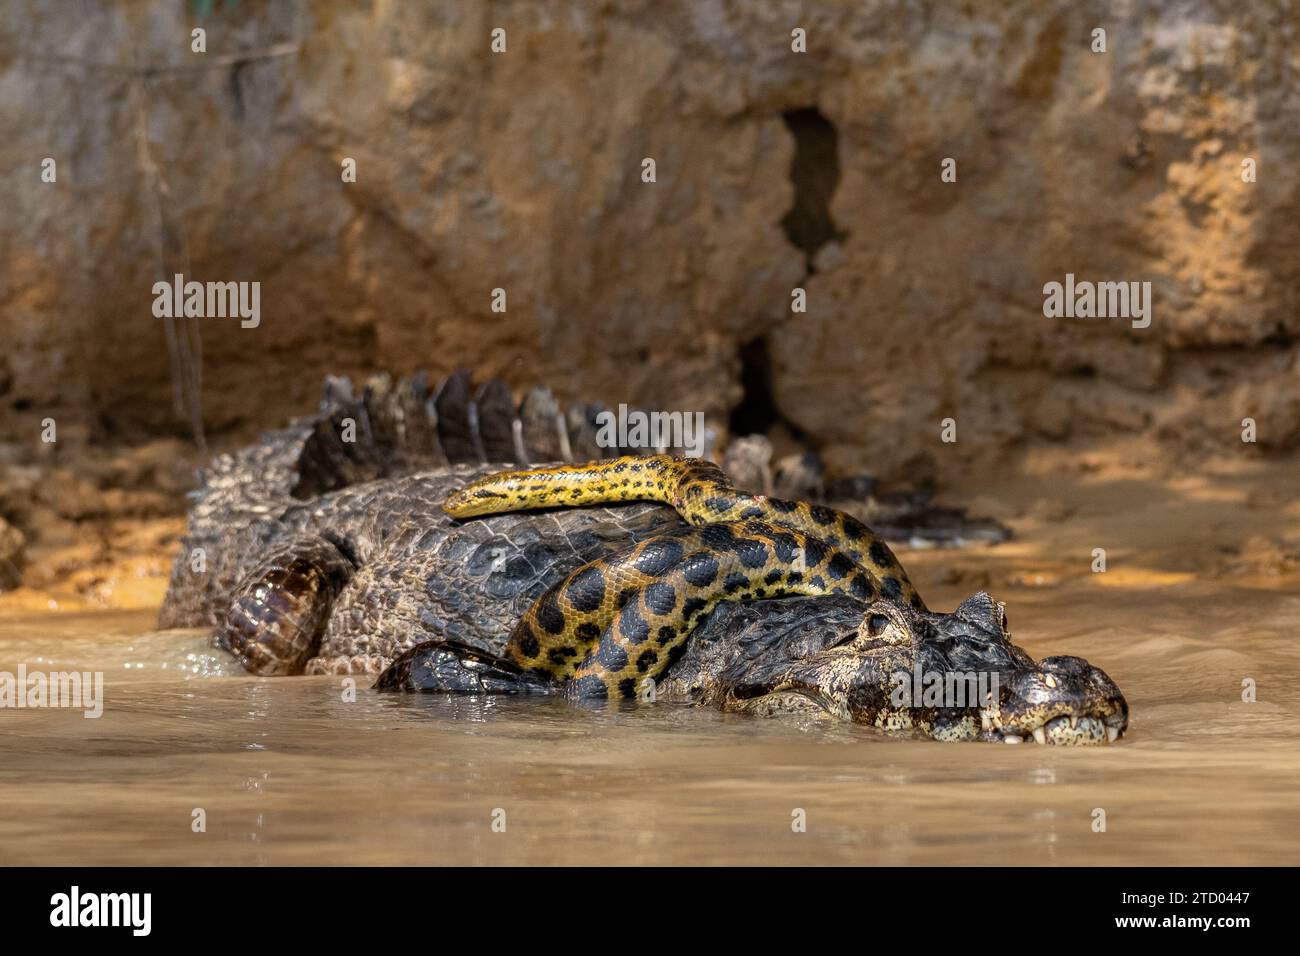 Alligator, der versucht, der Schlange zu entkommen BRASILIEN AUFREGENDE Bilder zeigen einen Kaimanalligator, der eine gelbe Anakonda wie eine Krawatte trägt. Die 1,6-Fuß-Lo Stockfoto